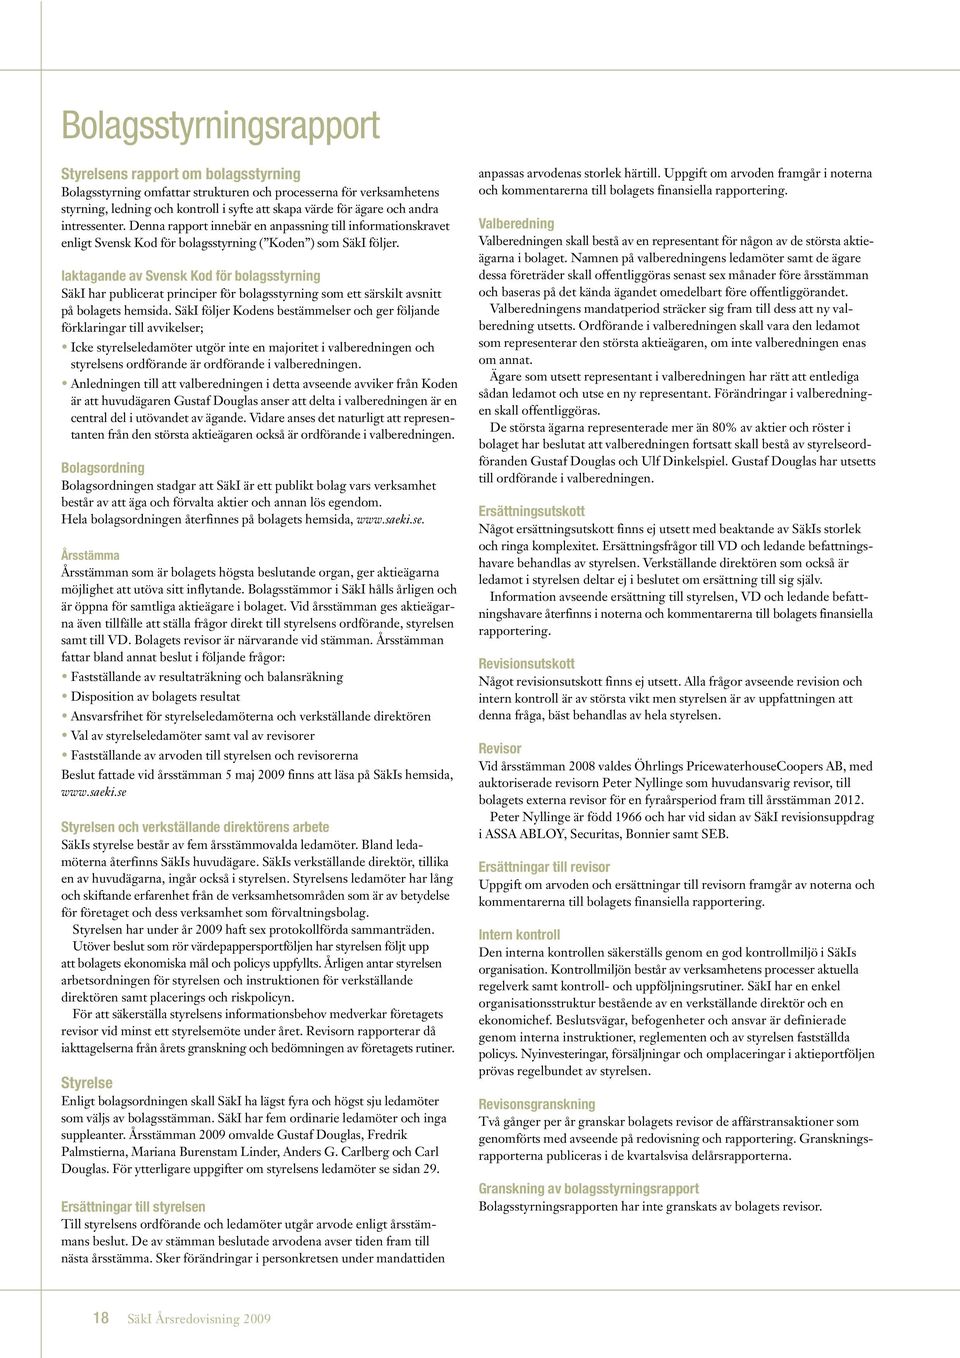 Iaktagande av Svensk Kod för bolagsstyrning SäkI har publicerat principer för bolagsstyrning som ett särskilt avsnitt på bolagets hemsida.